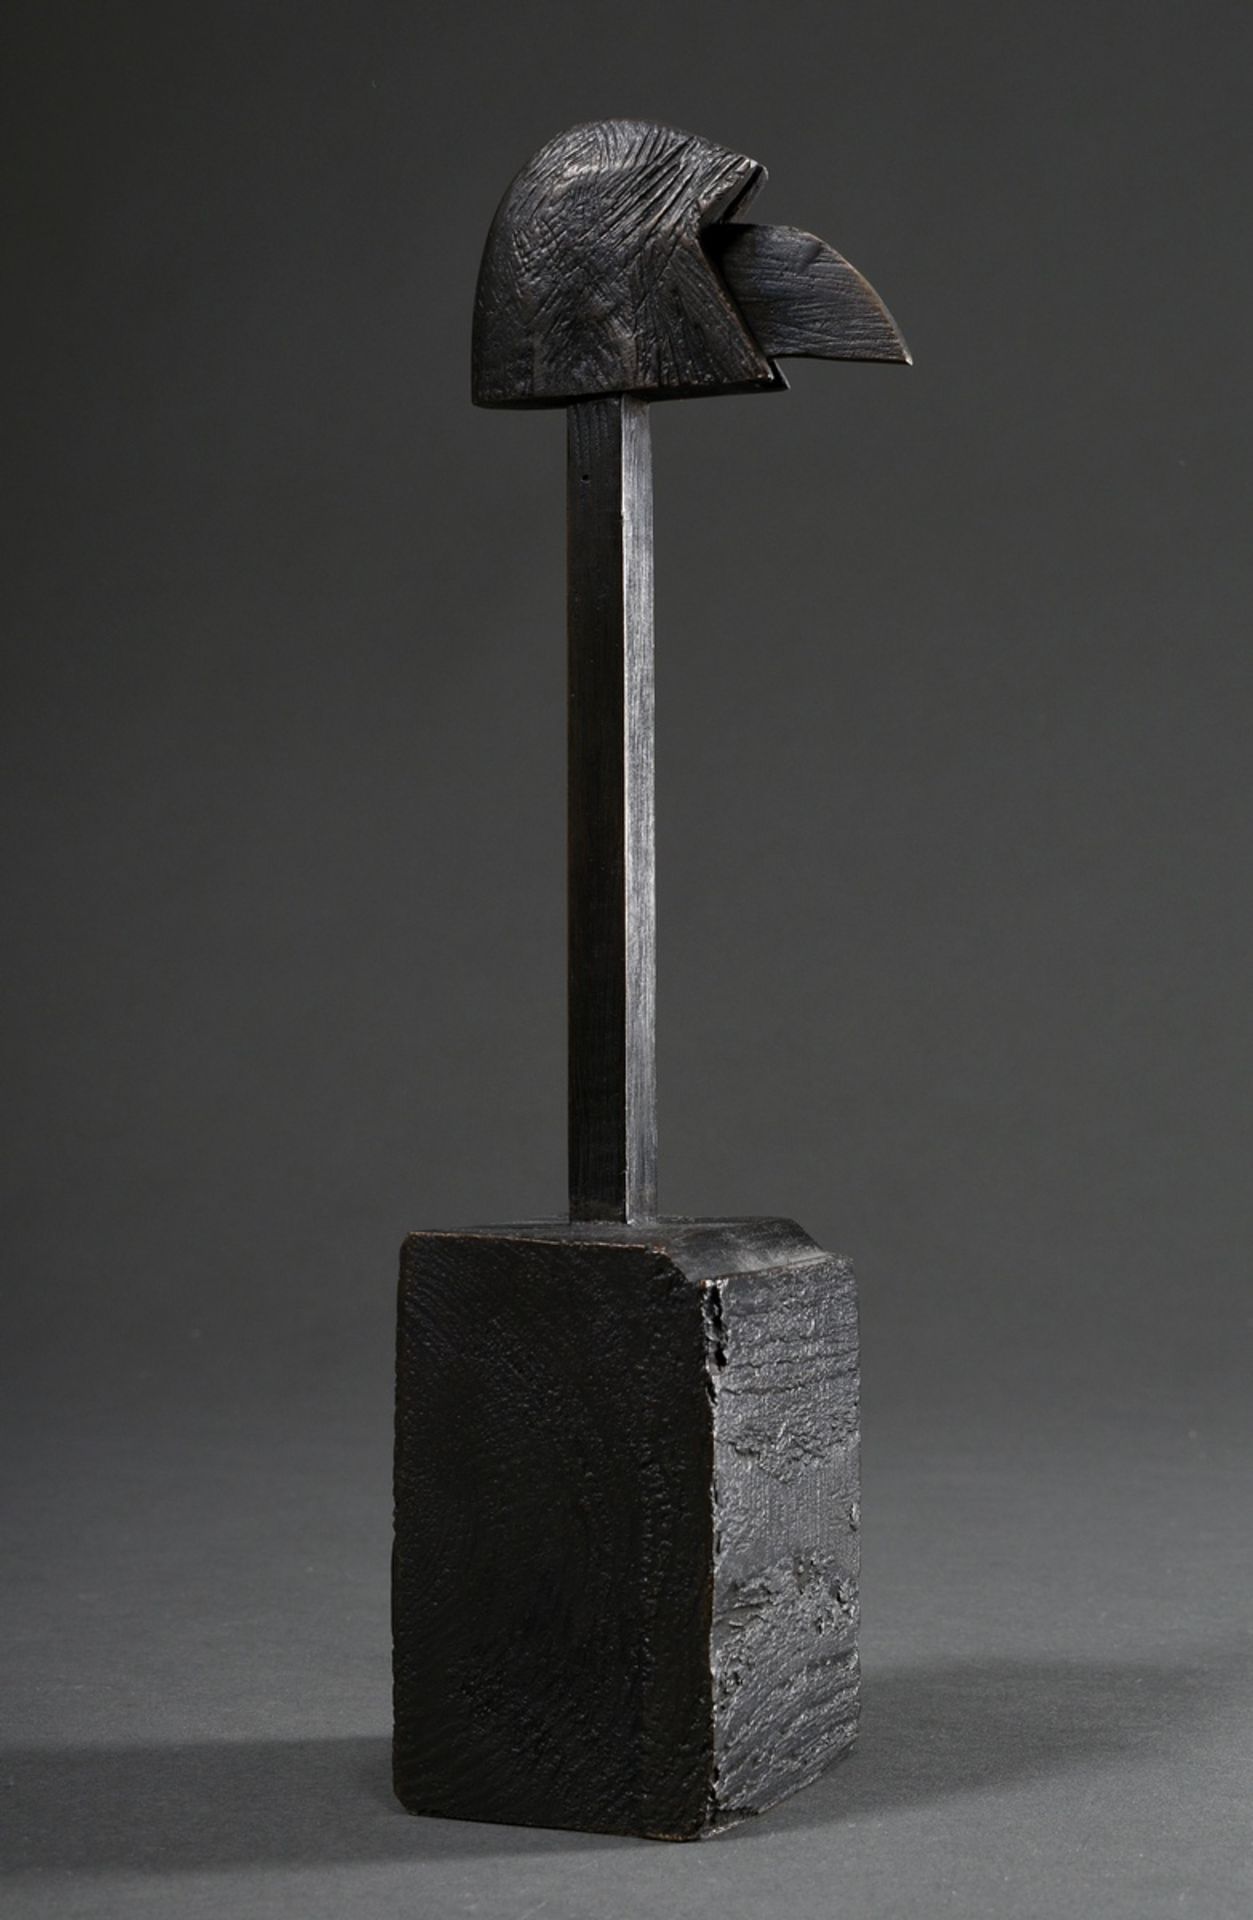 Kriester, Rainer (1935-2002) "Bird's head" 1998, bronze, monogrammed, inside inscribed "WV 981, dat